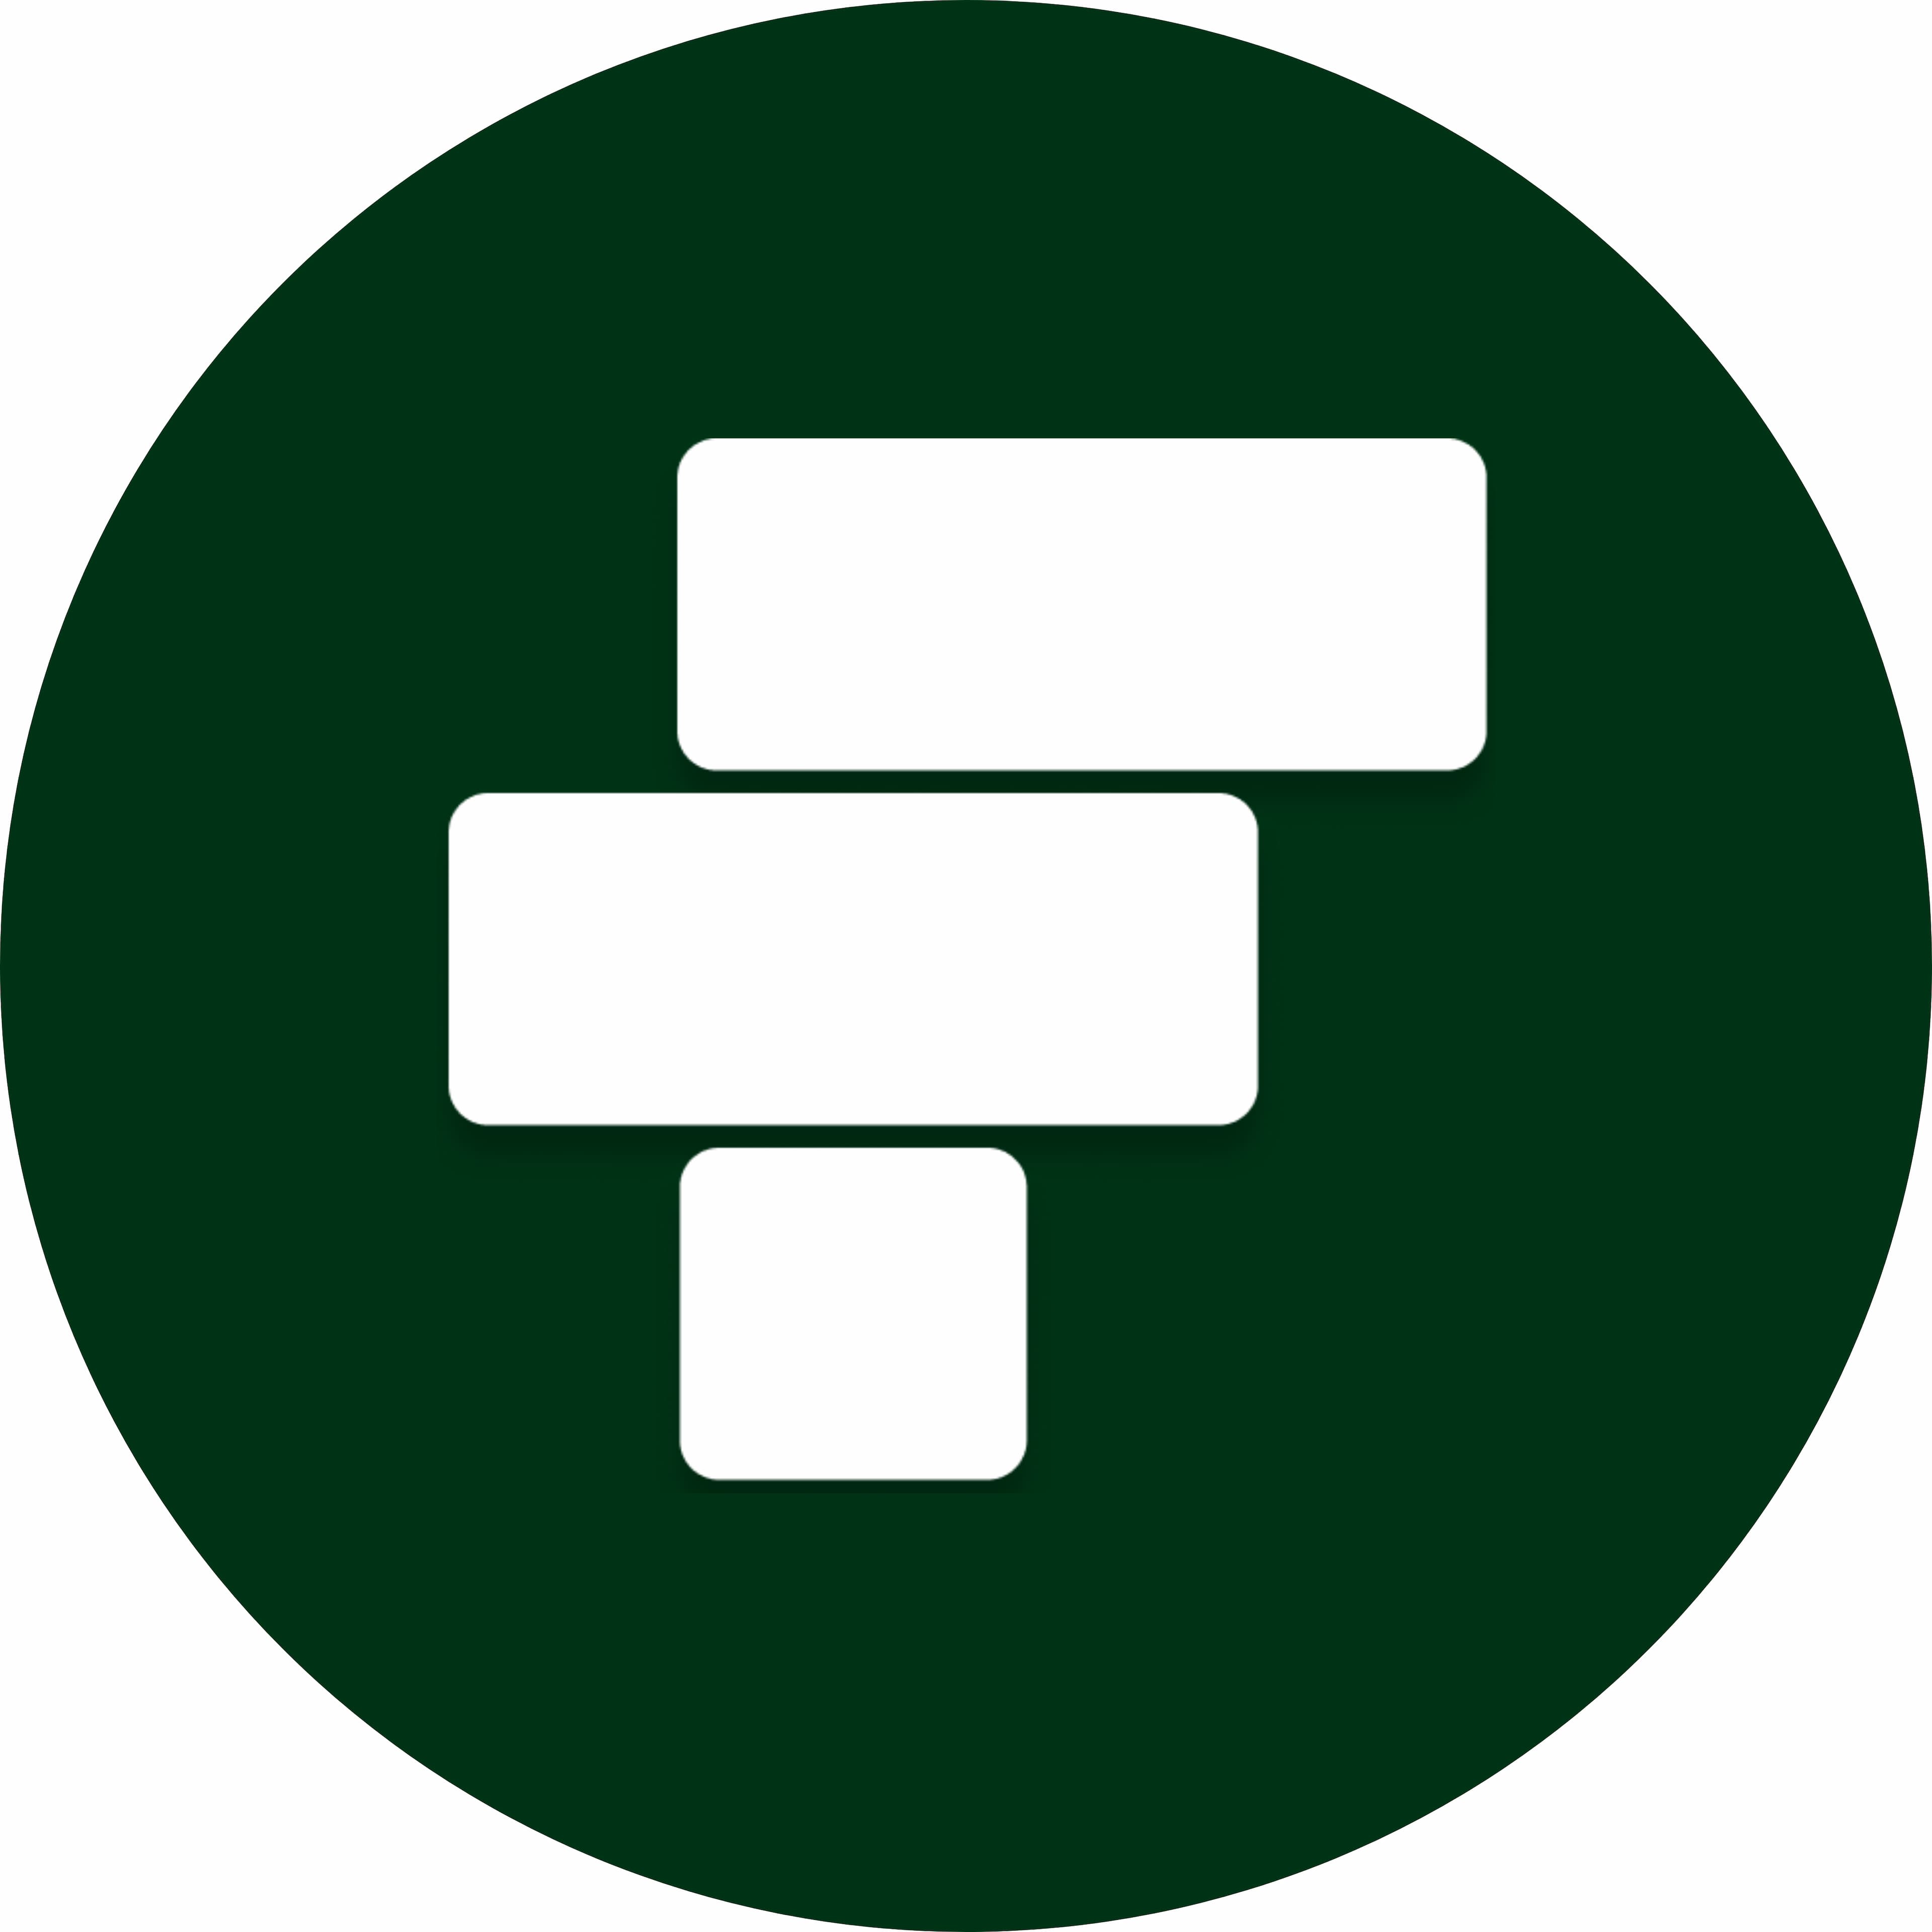 FactoryPlus's logo